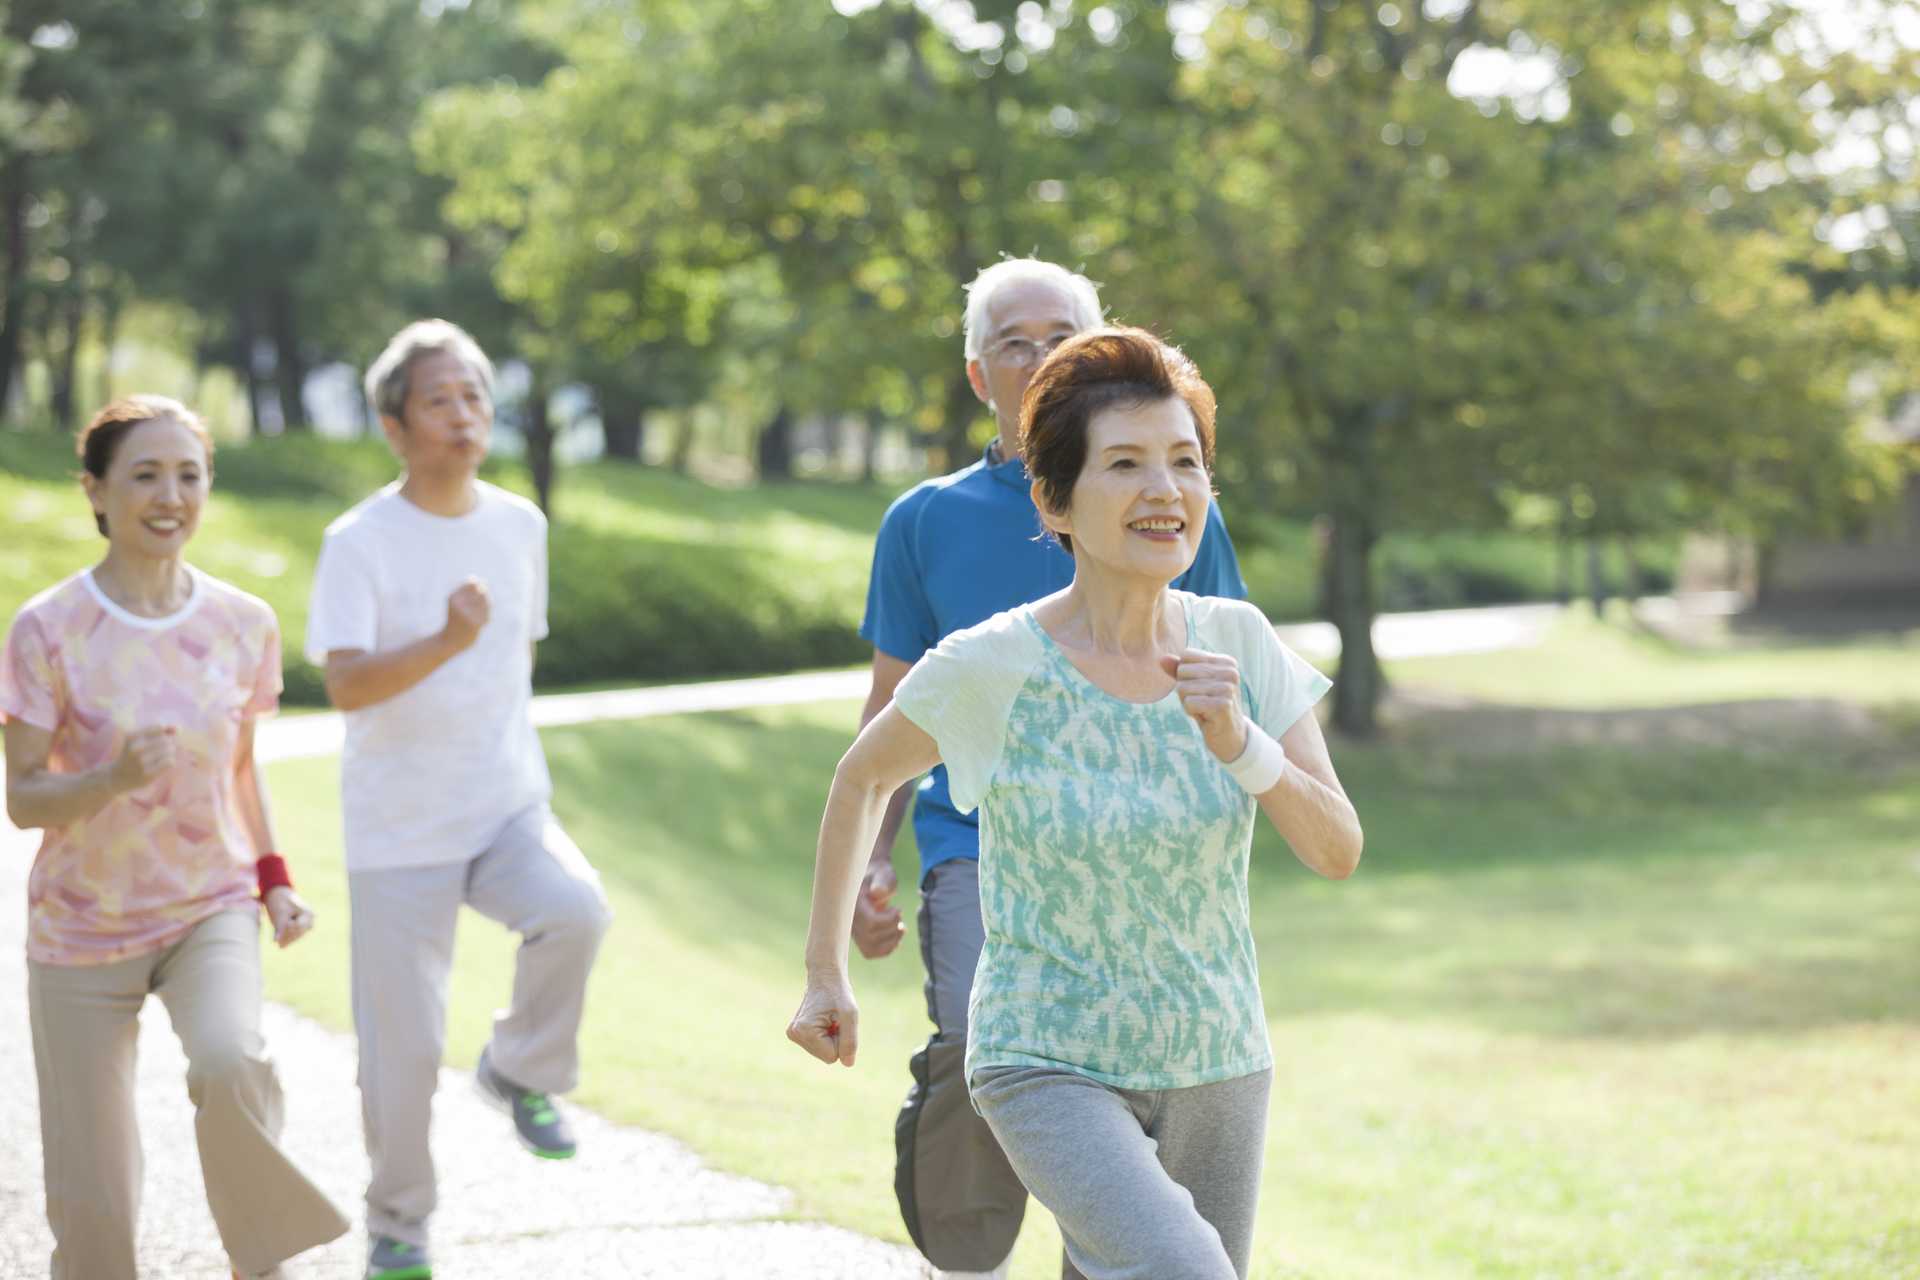 歩くことは、若々しい体と脳を保つ方法である。 | 散歩の楽しみ方に気づく30のポイント